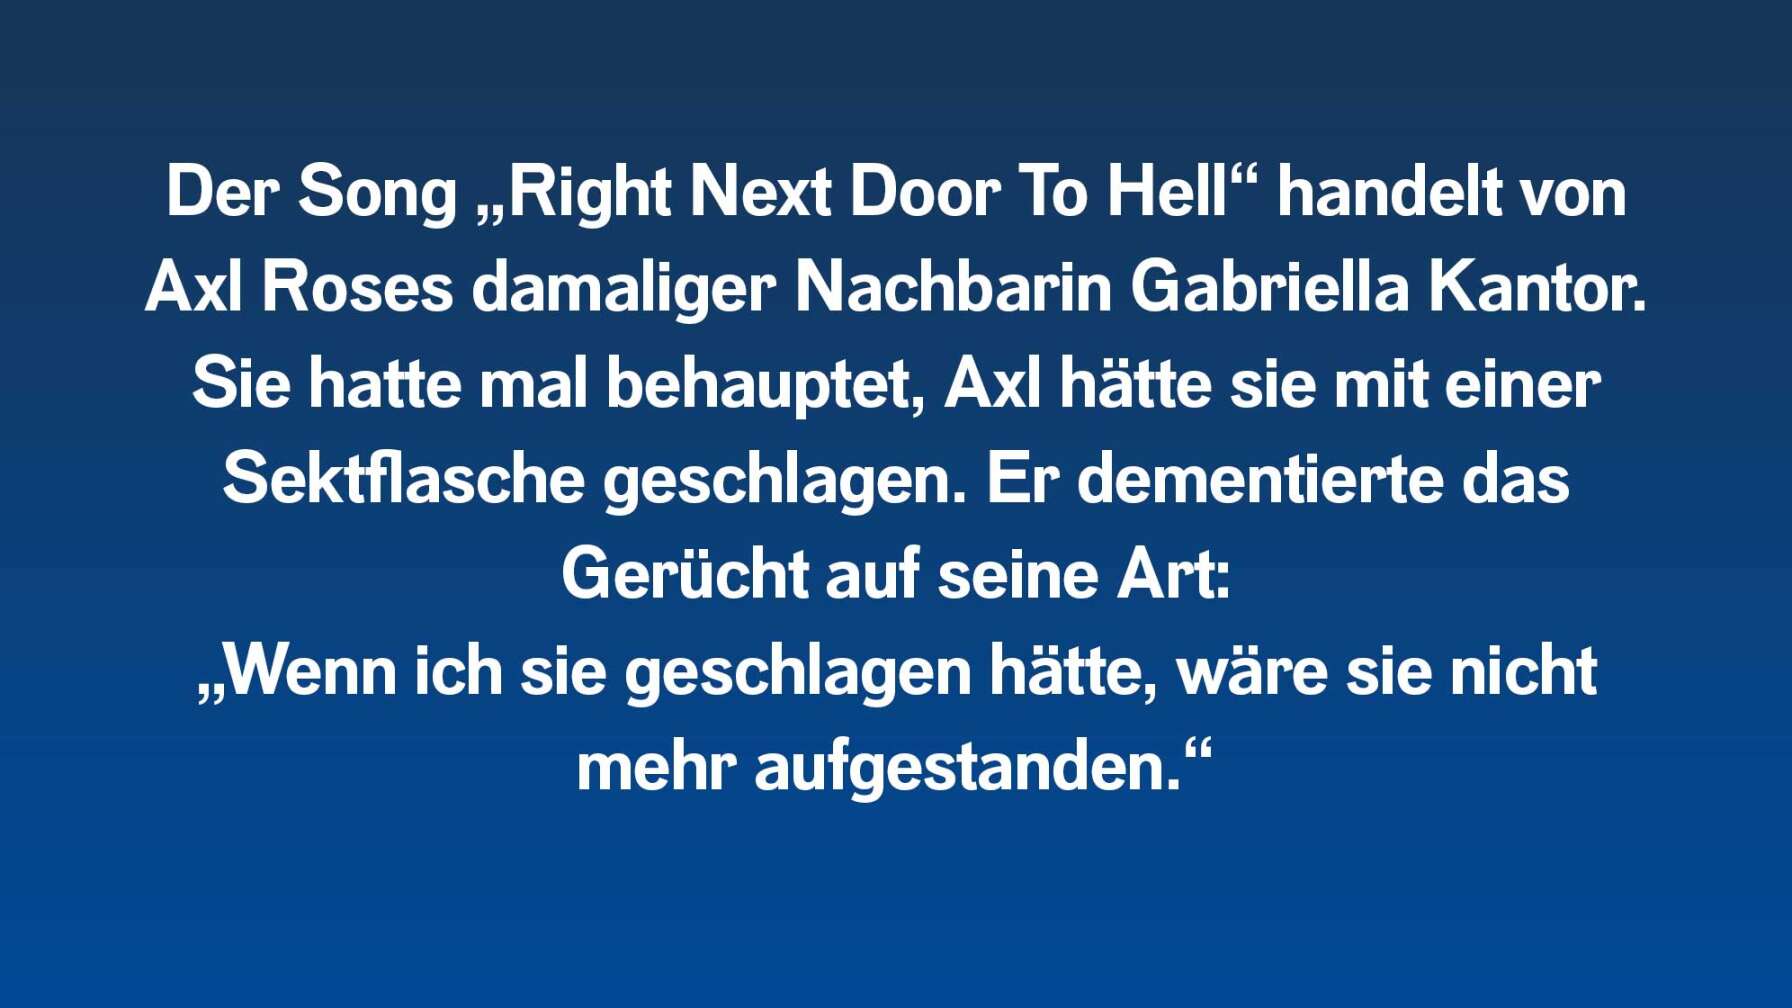 Der Song "Right Next Door To Hell" handelt von Axl Roses damaliger Nachbarin, mit der er sich regelmäßig gestritten hatte.